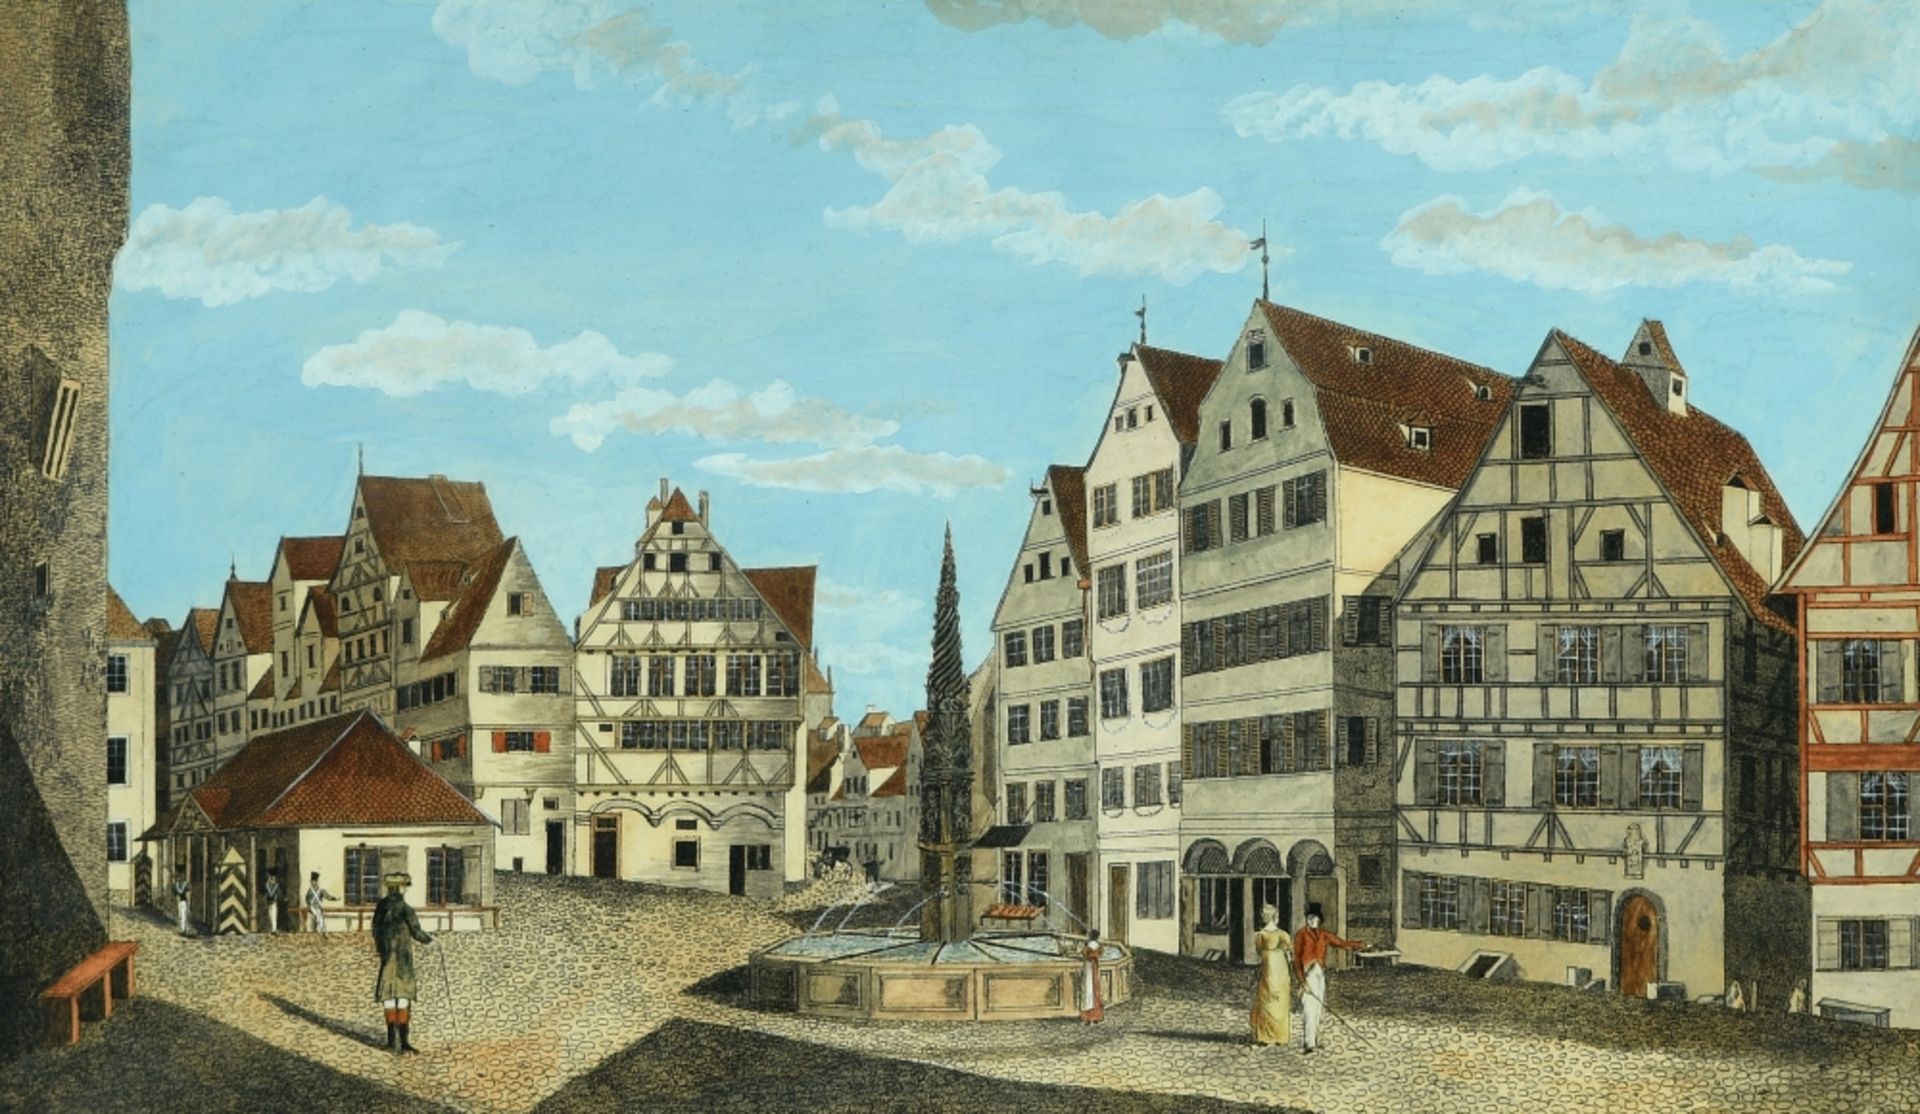 Ulm, Marktplatz mit Fischkastenbrunnen - Image 2 of 2